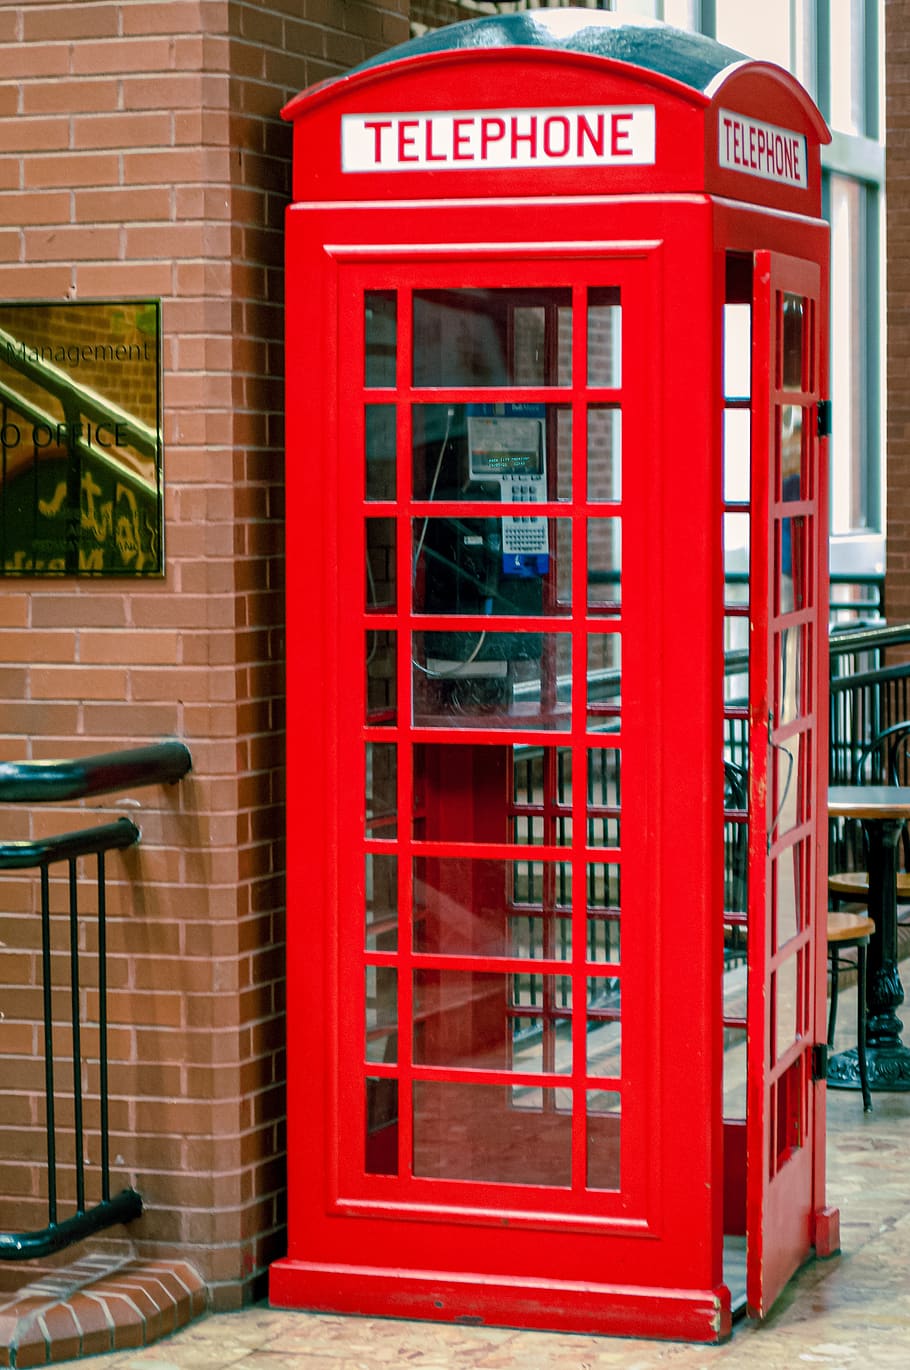 bilik telepon, merah, telepon, komunikasi, bilik, umum, kios telepon, eksterior bangunan, teks, Arsitektur